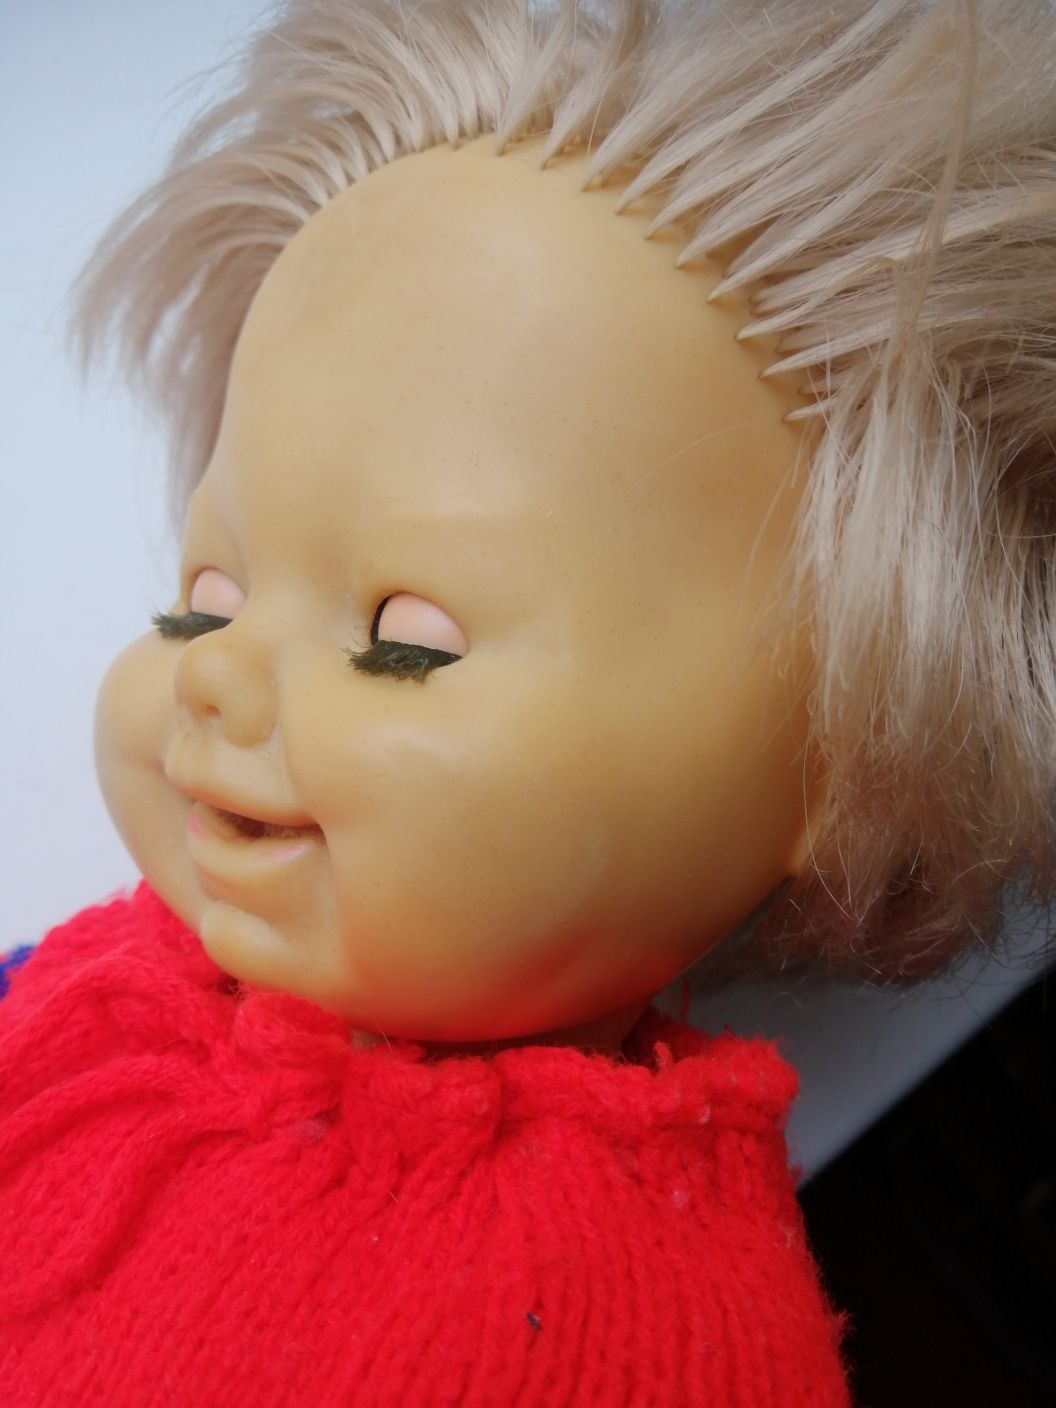 Кукла Schildkrot черепашка мальчик лялька анатомическая гдр винтажная